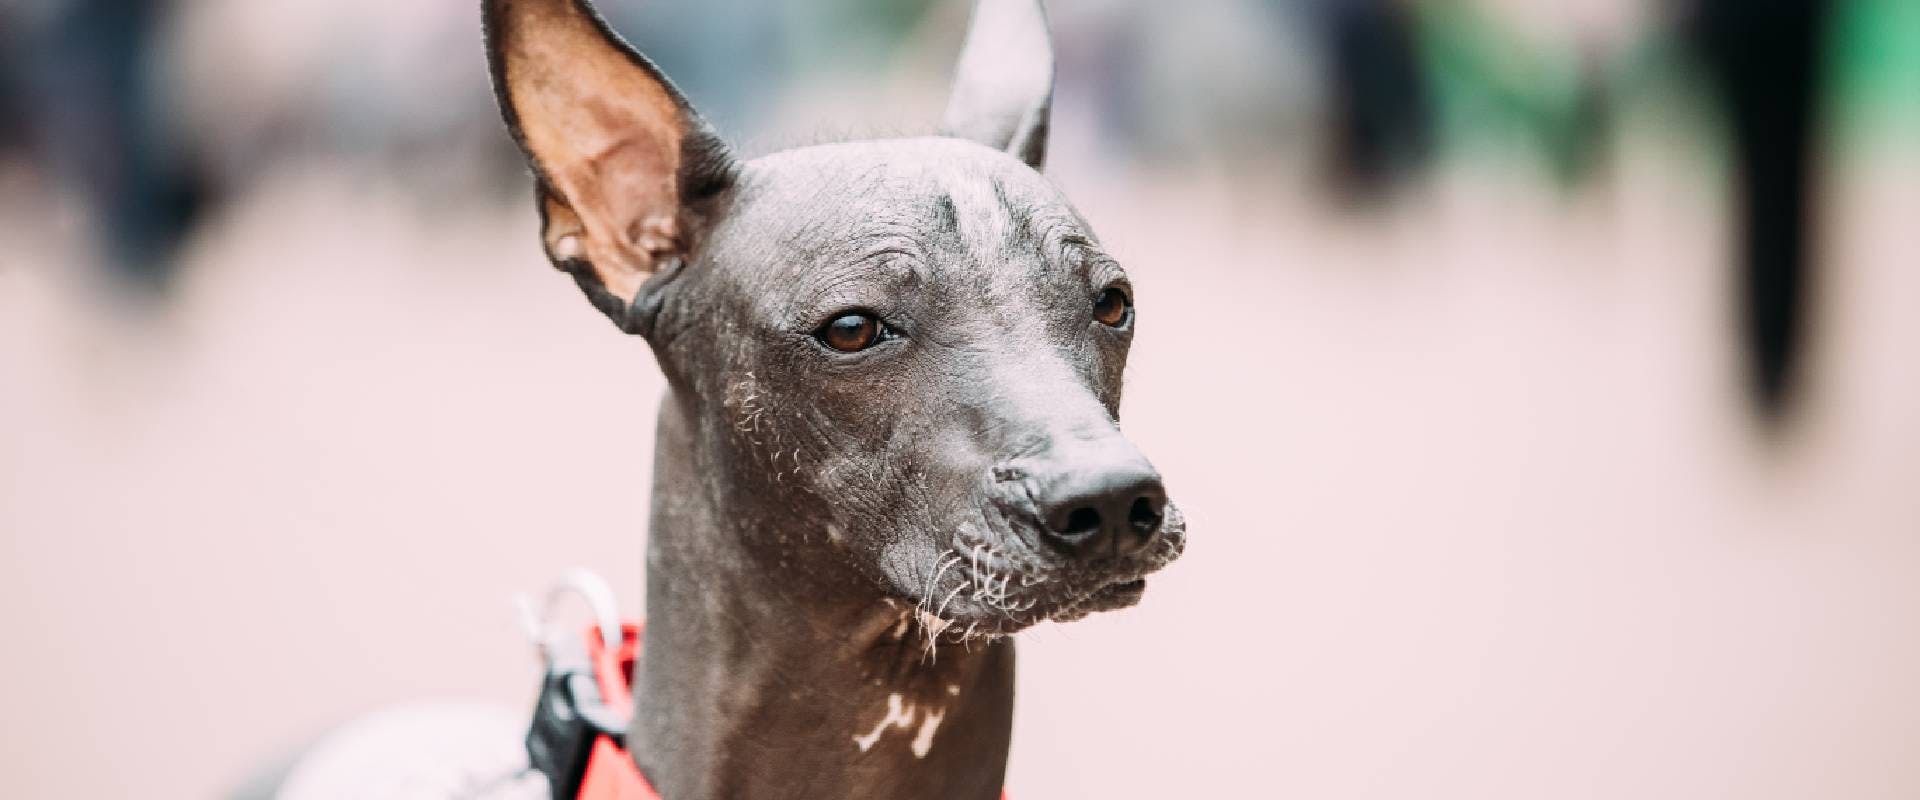 Xoloitzcuintli dog, close-up